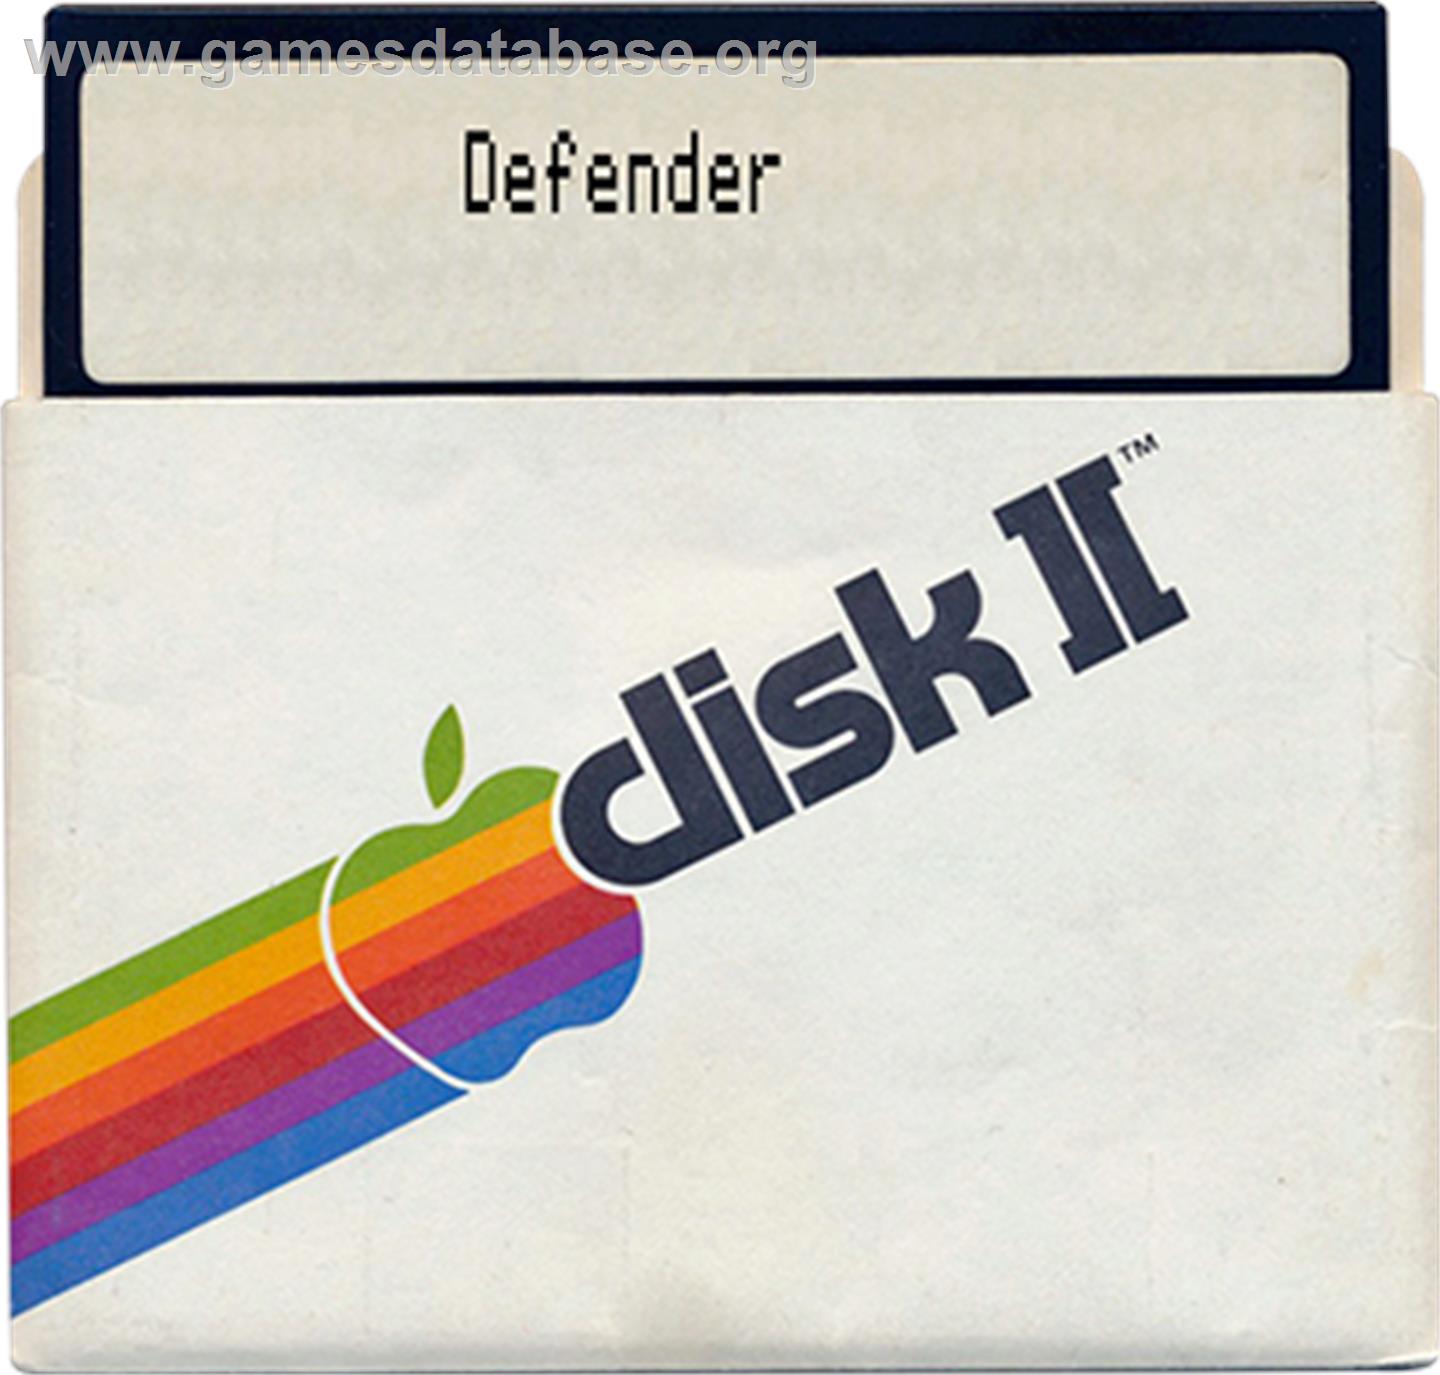 Telengard - Apple II - Artwork - Disc